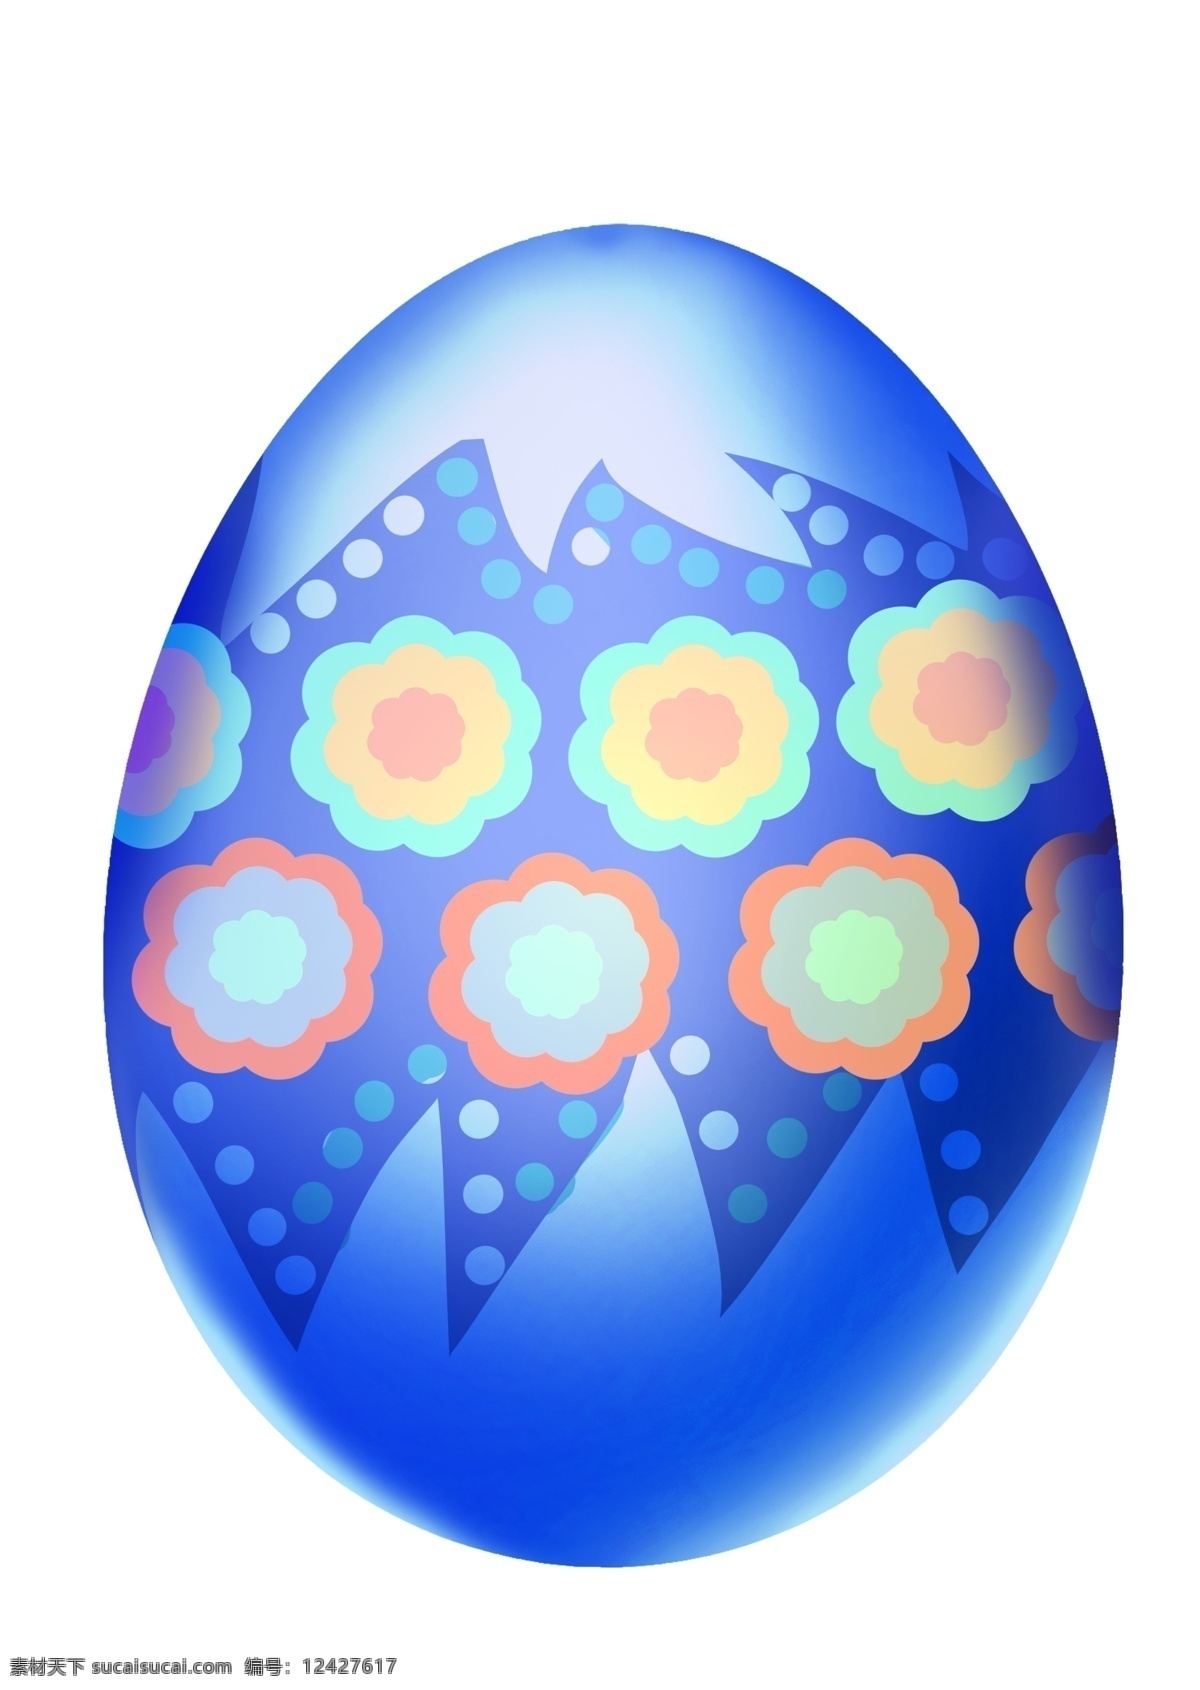 复活节 鲜花 彩蛋 插画 漂亮的花朵 卡通插画 彩蛋插画 复活节插画 节日插画 鸡蛋插画 鲜花的彩蛋